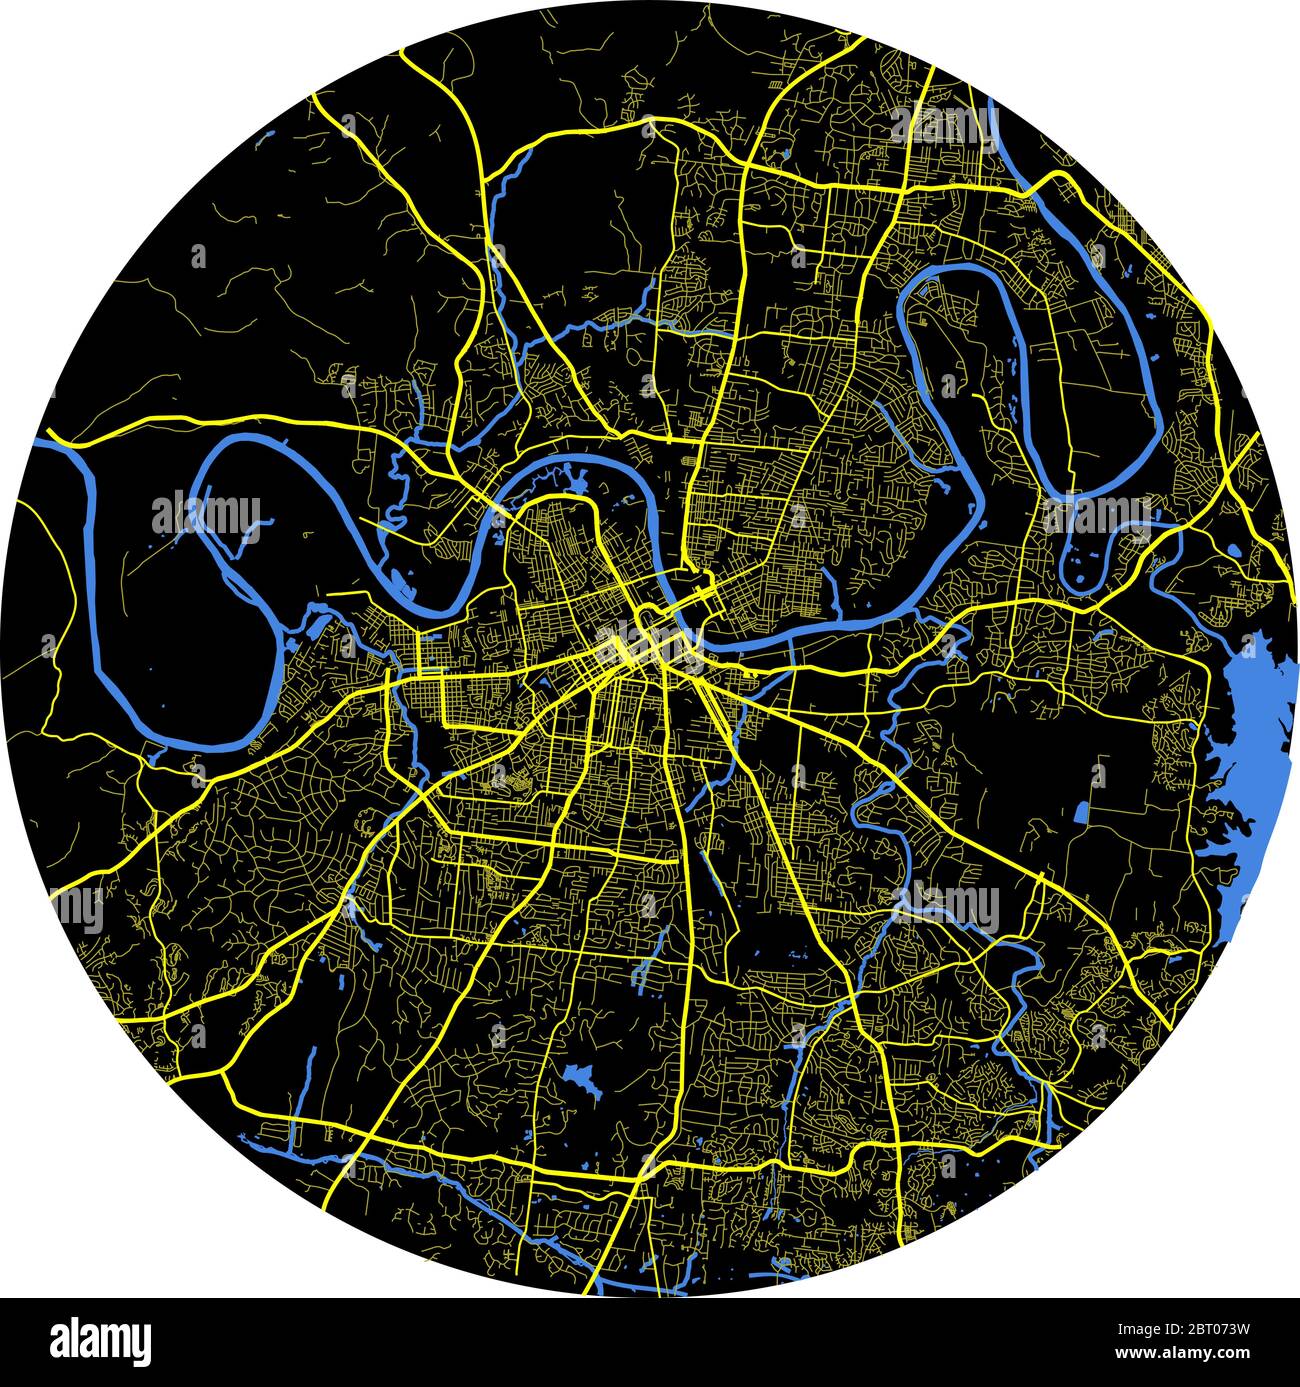 Nashville Vektorkarte rund mit Straßen und Flüssen auf schwarzem Hintergrund Stock Vektor